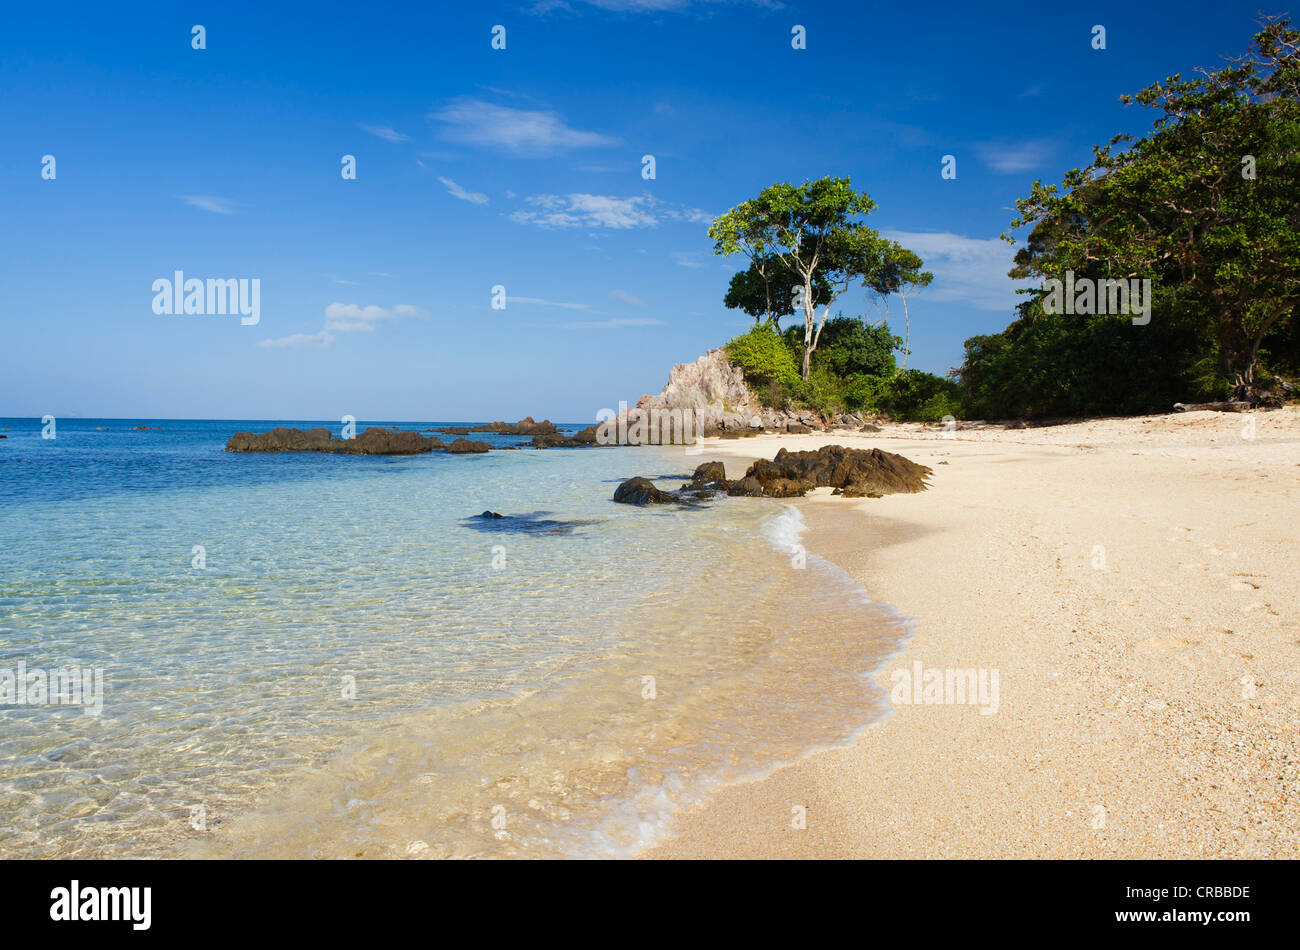 Plage de sable fin, Golden Pearl Beach, Ko Jum ou Koh Pu), Krabi, Thaïlande, Asie du Sud-Est Banque D'Images